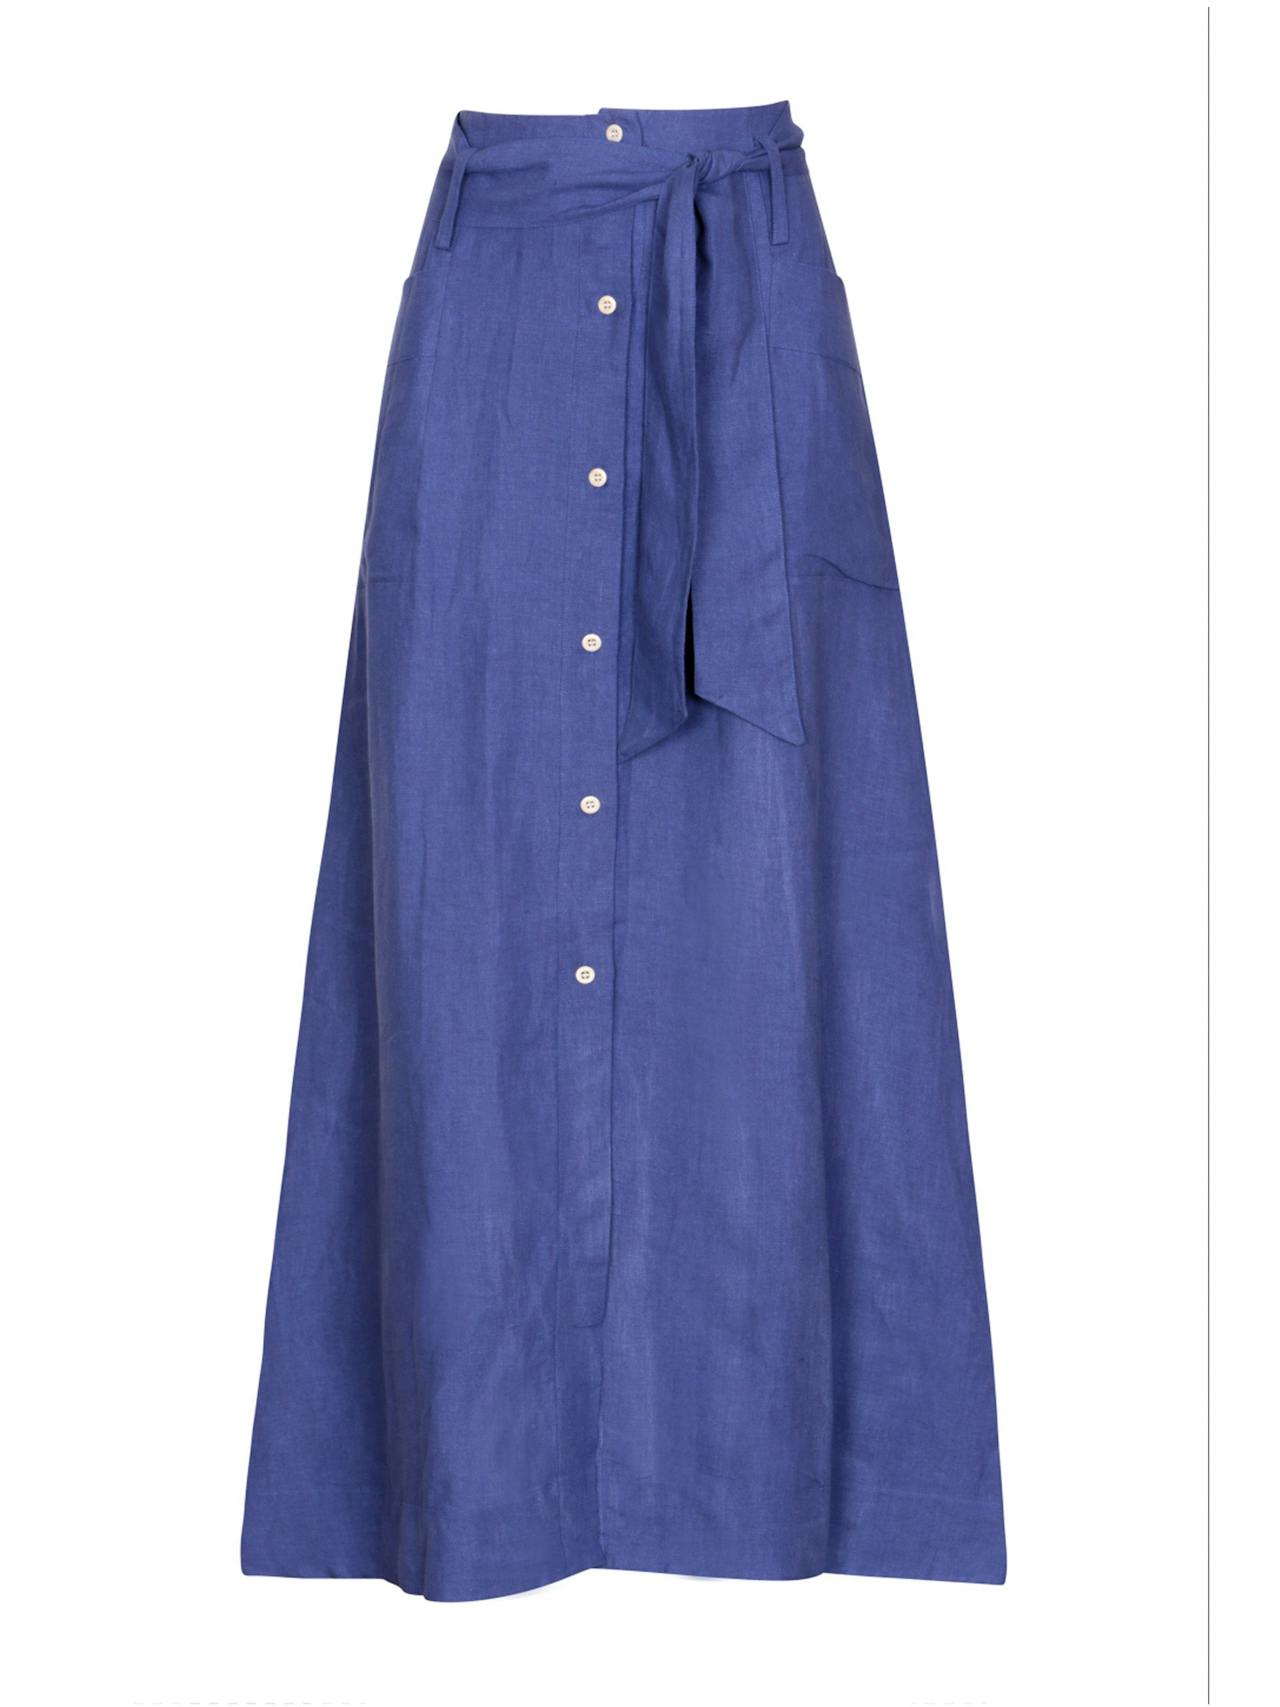 Klein blue Nomade skirt